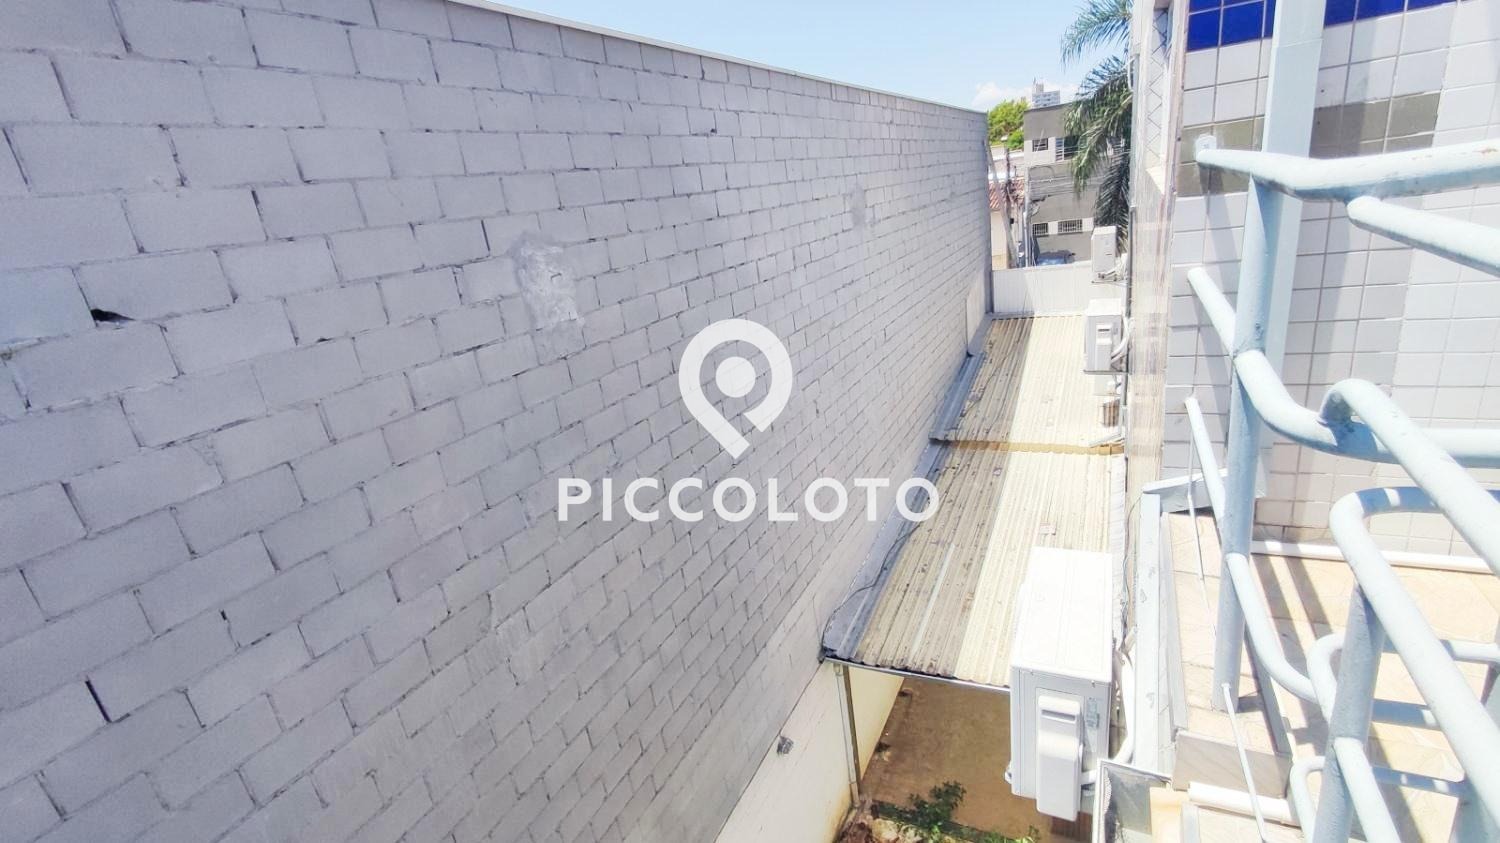 Piccoloto -Prédio à venda no Vila Santana em Campinas